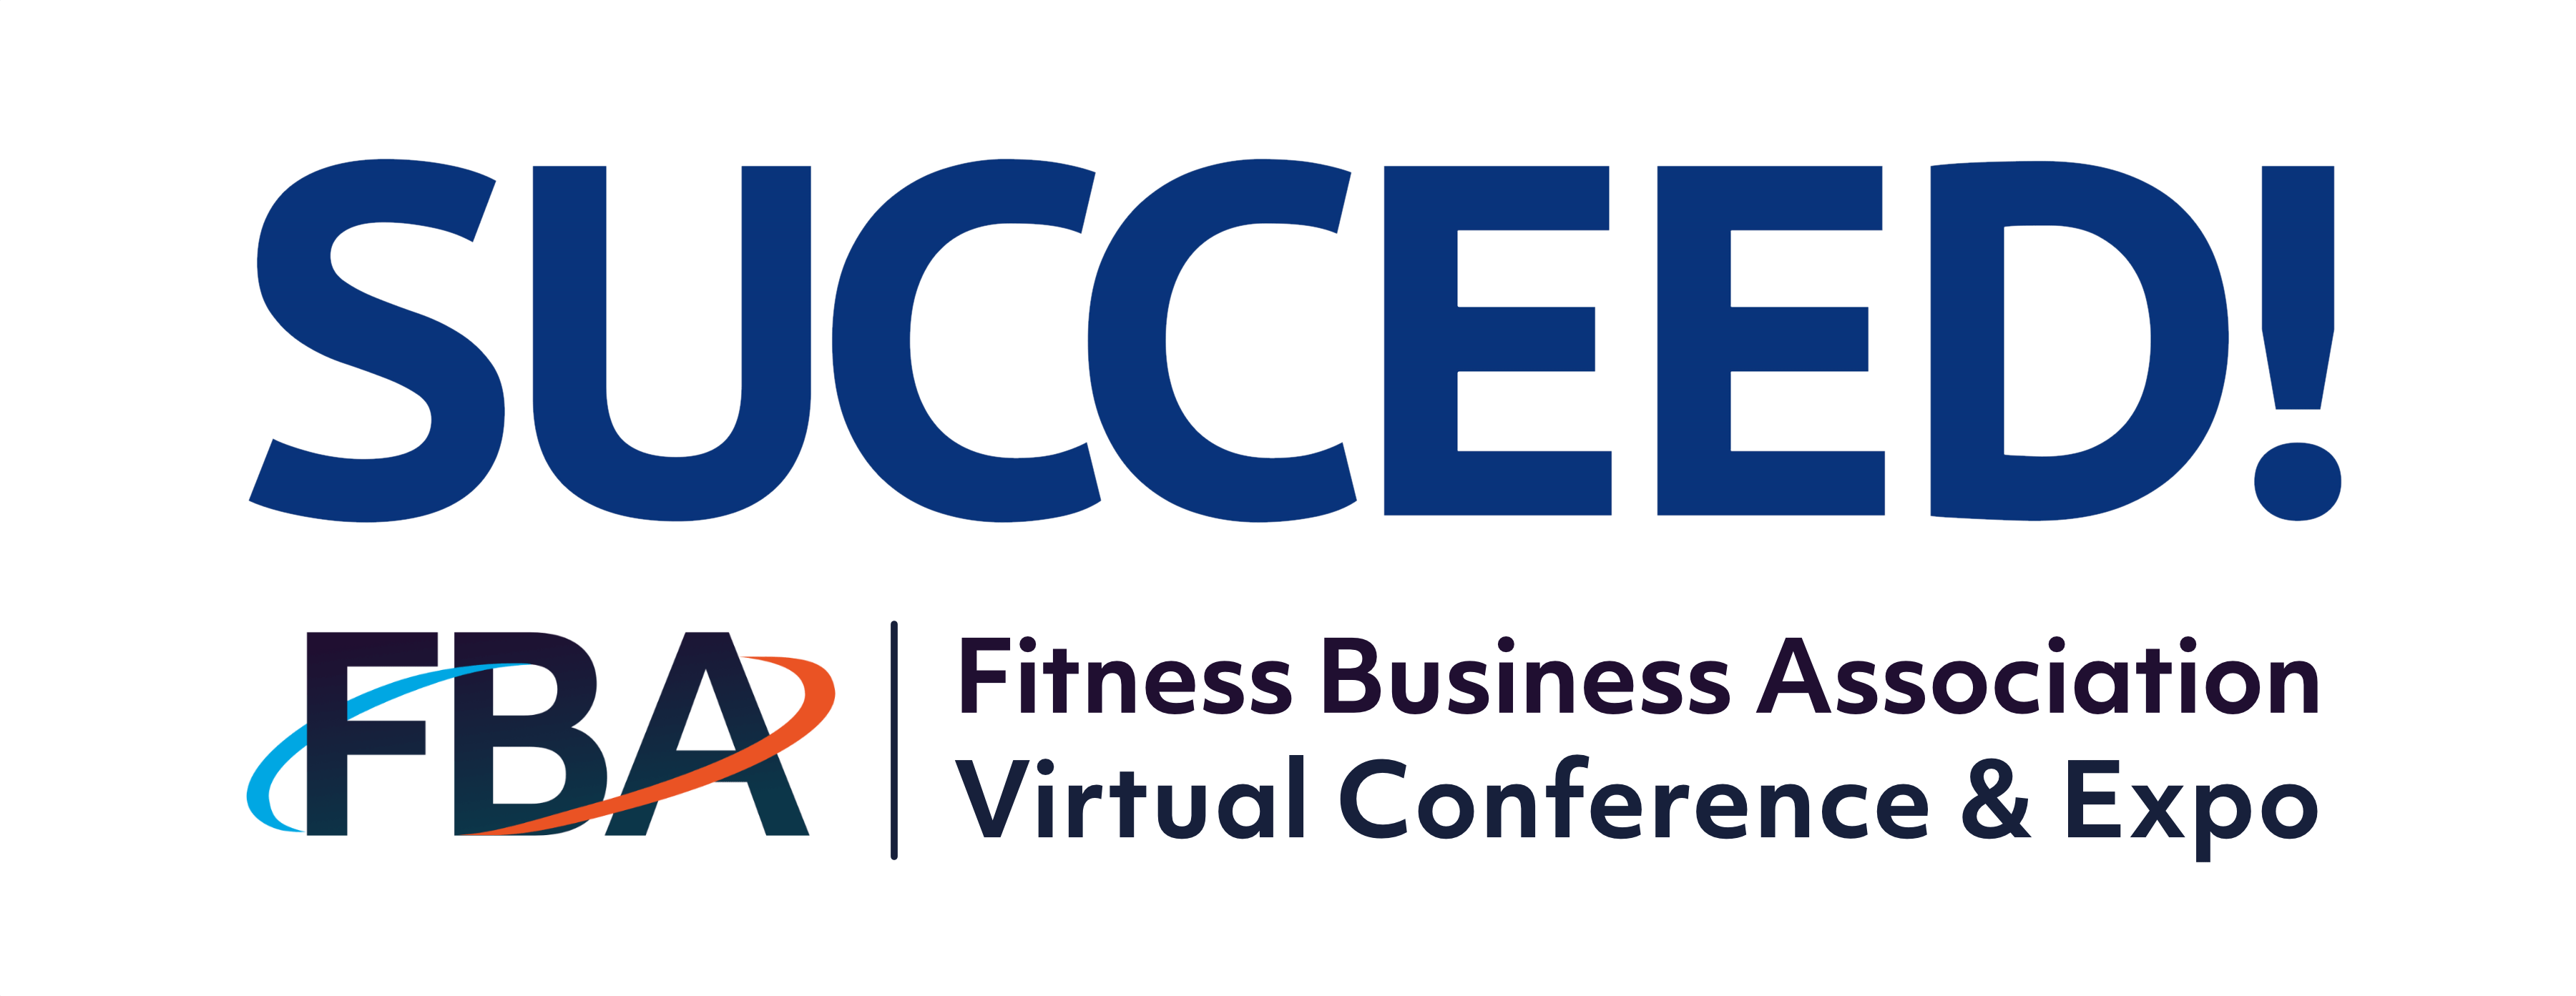 Fitness Business Association